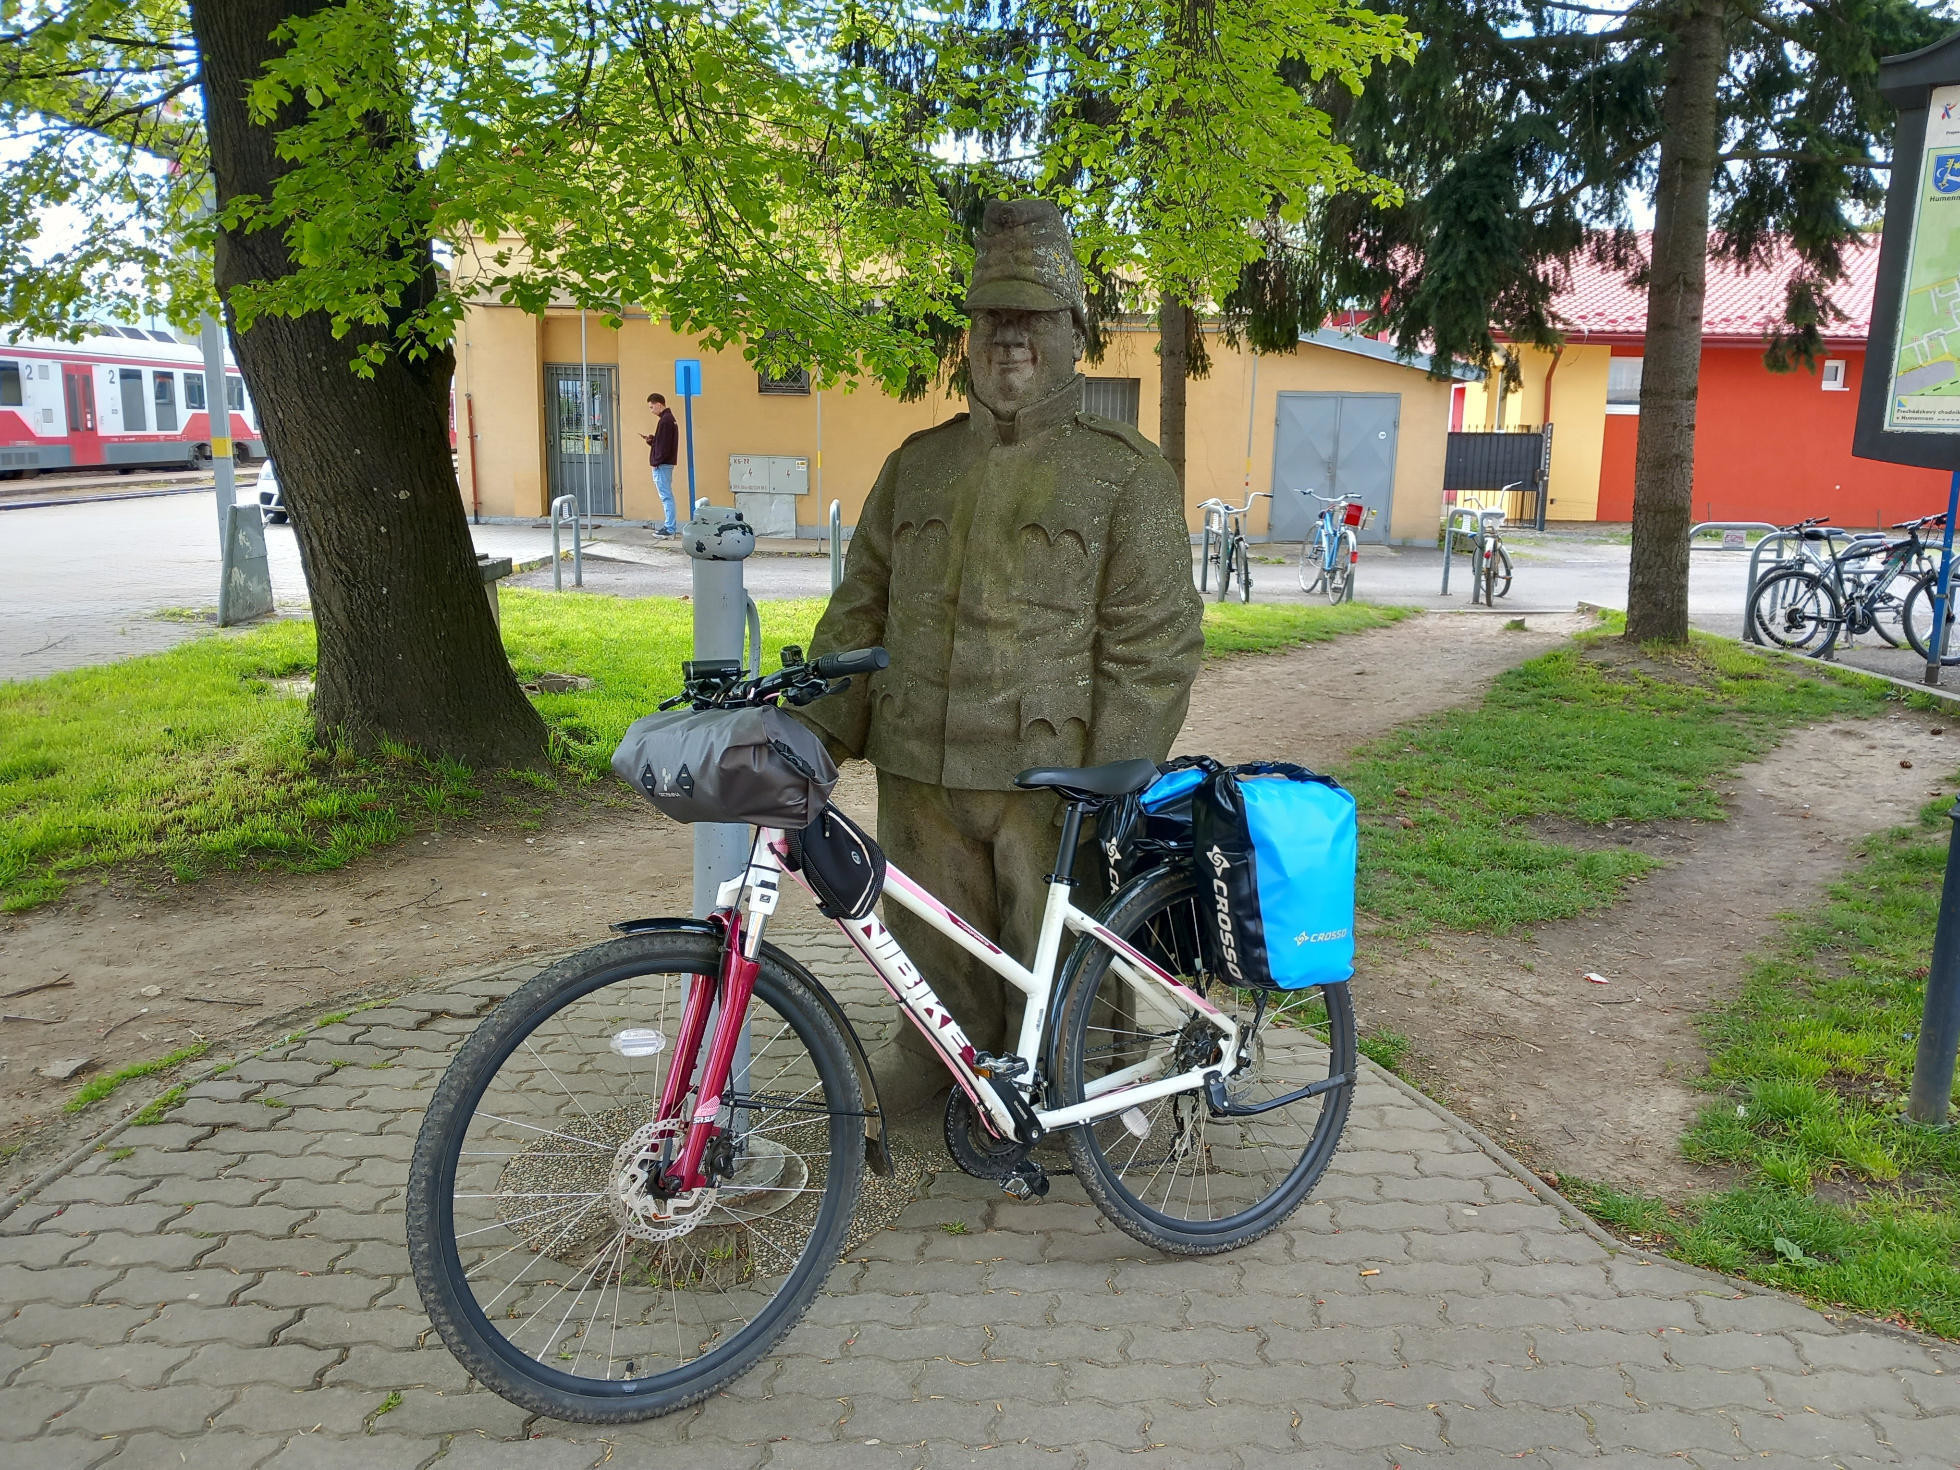 Baklažán (môj bicykel) so Švejkom na železničnej stanici v Humennom